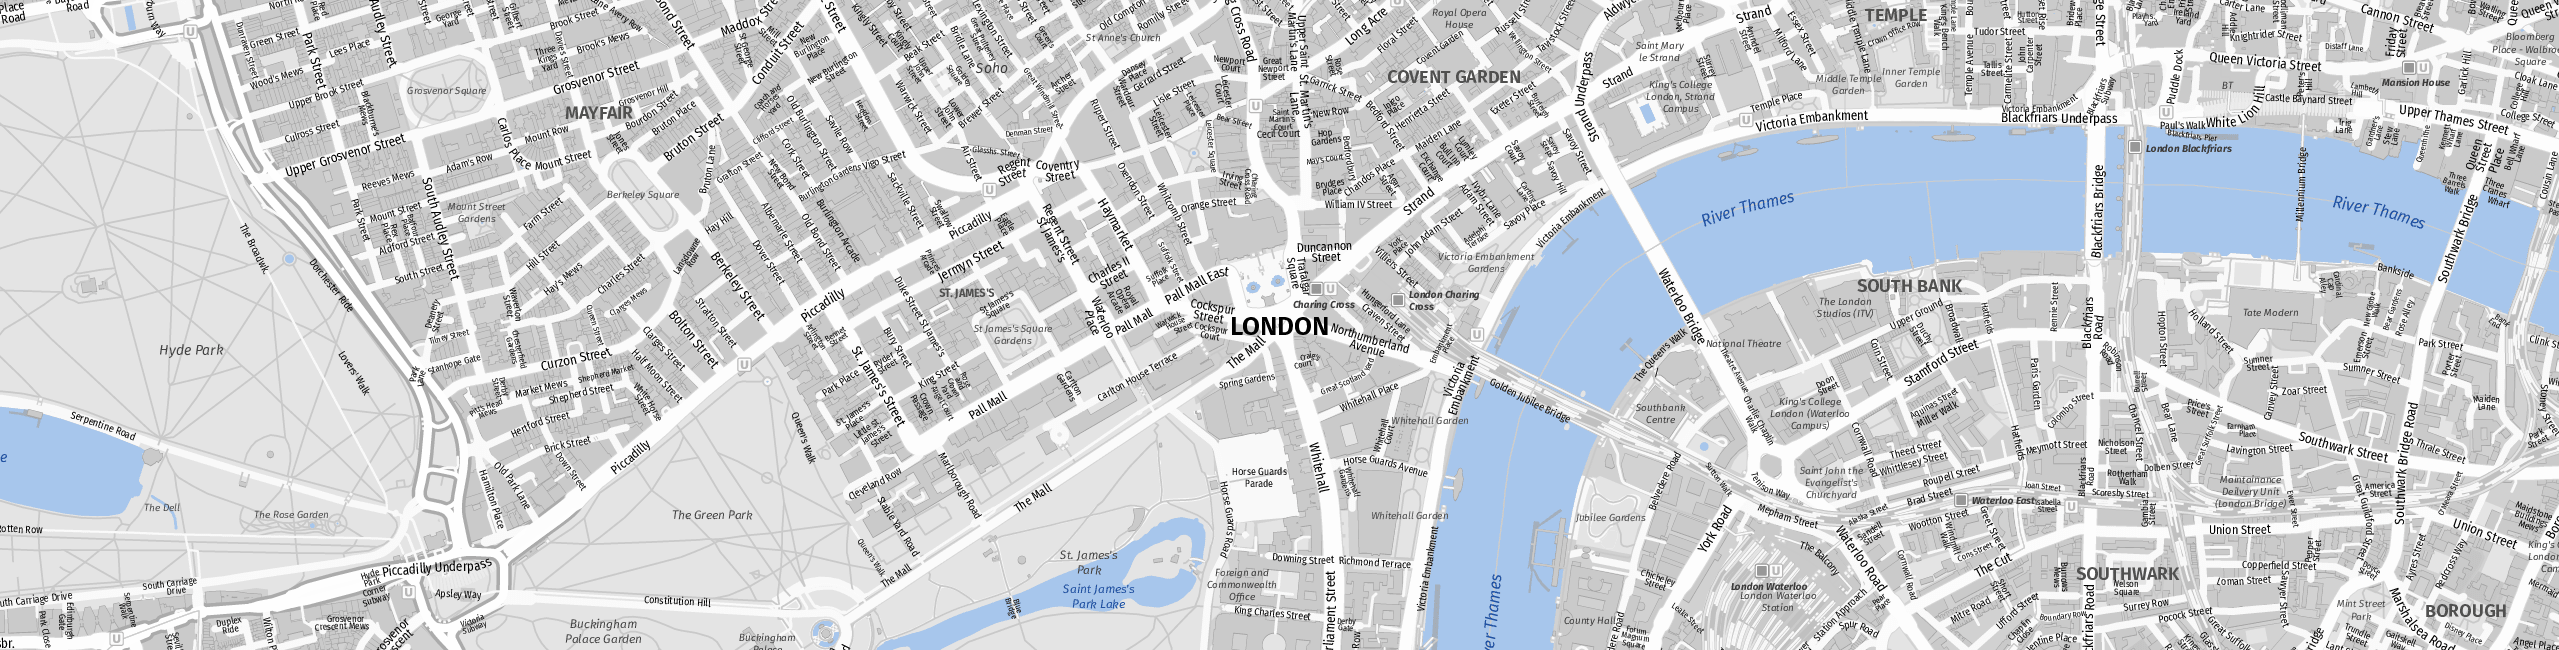 Stadtplan London zum Downloaden.